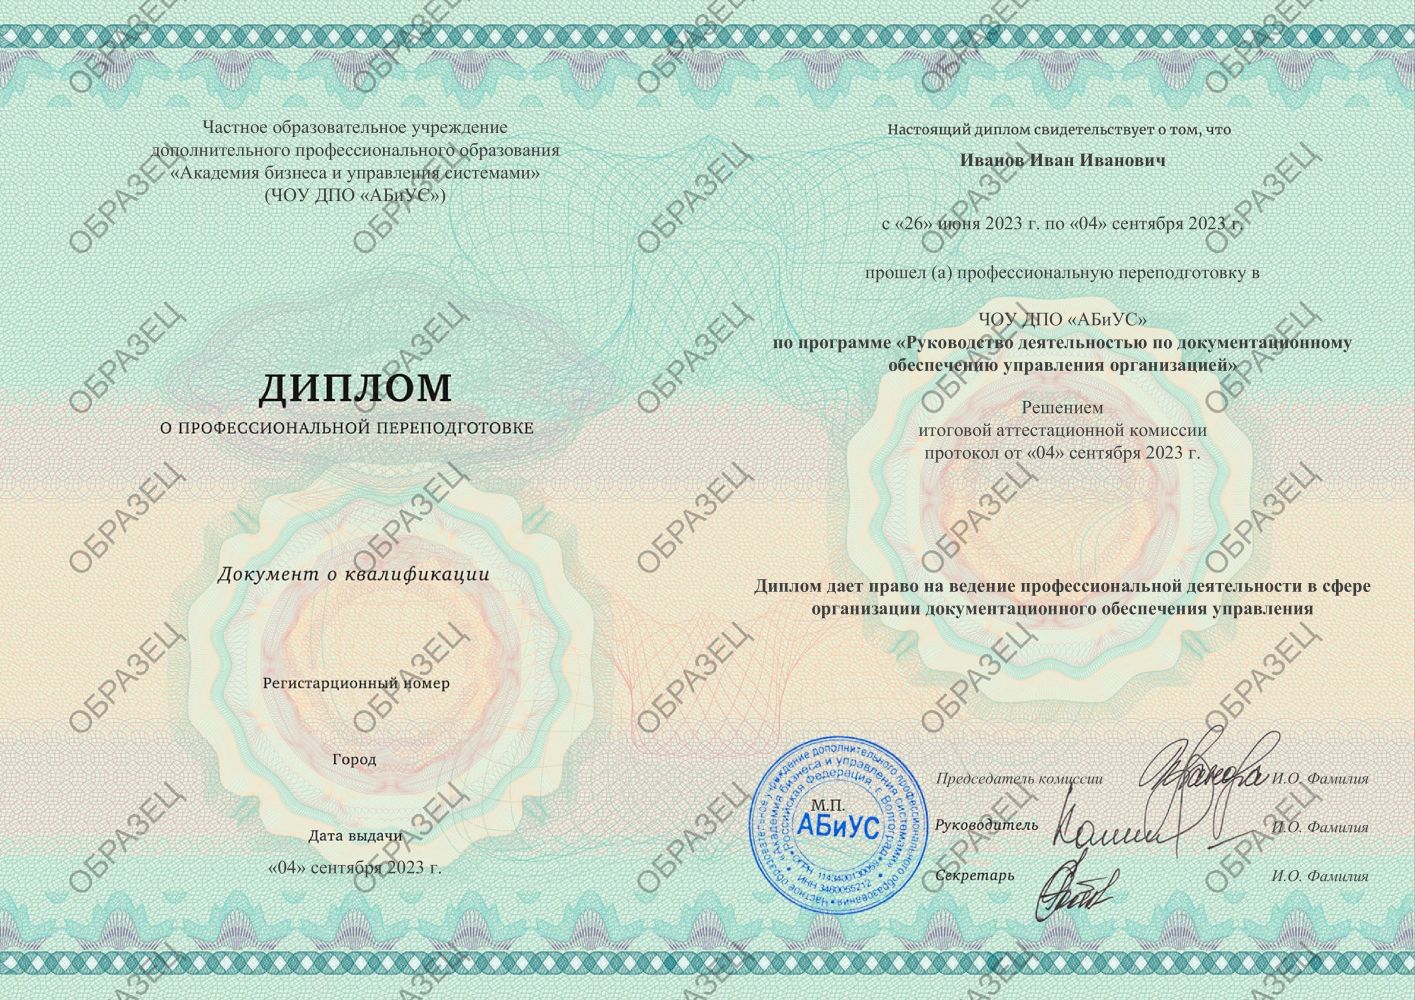 Диплом Руководство деятельностью по документационному обеспечению управления организацией 260 часов 12563 руб.